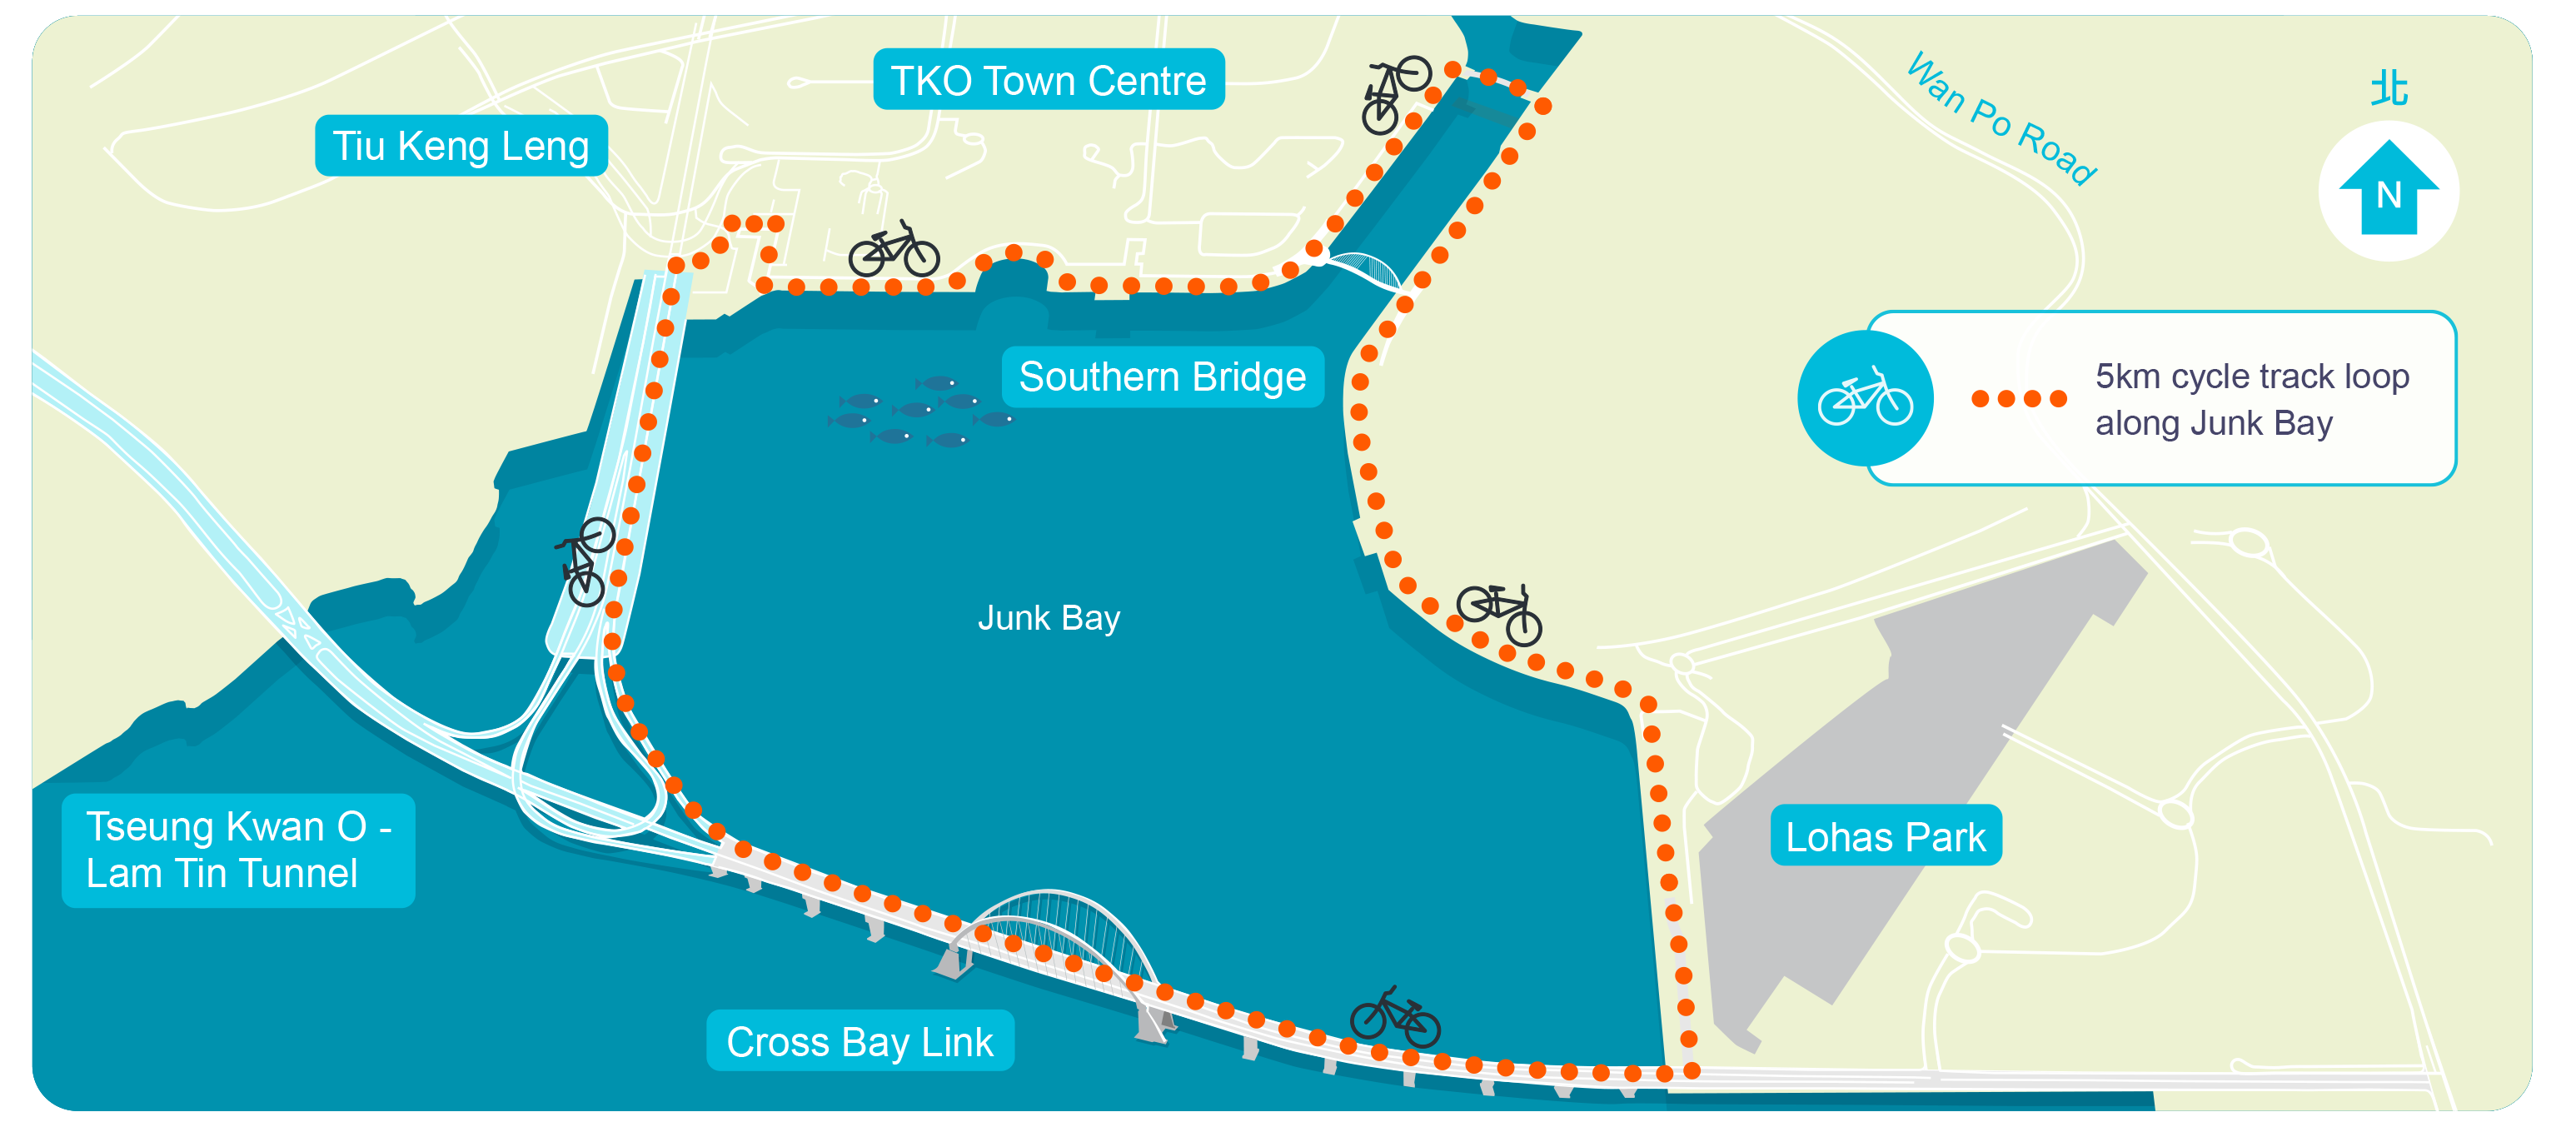 5km cycle track loop along Junk Bay